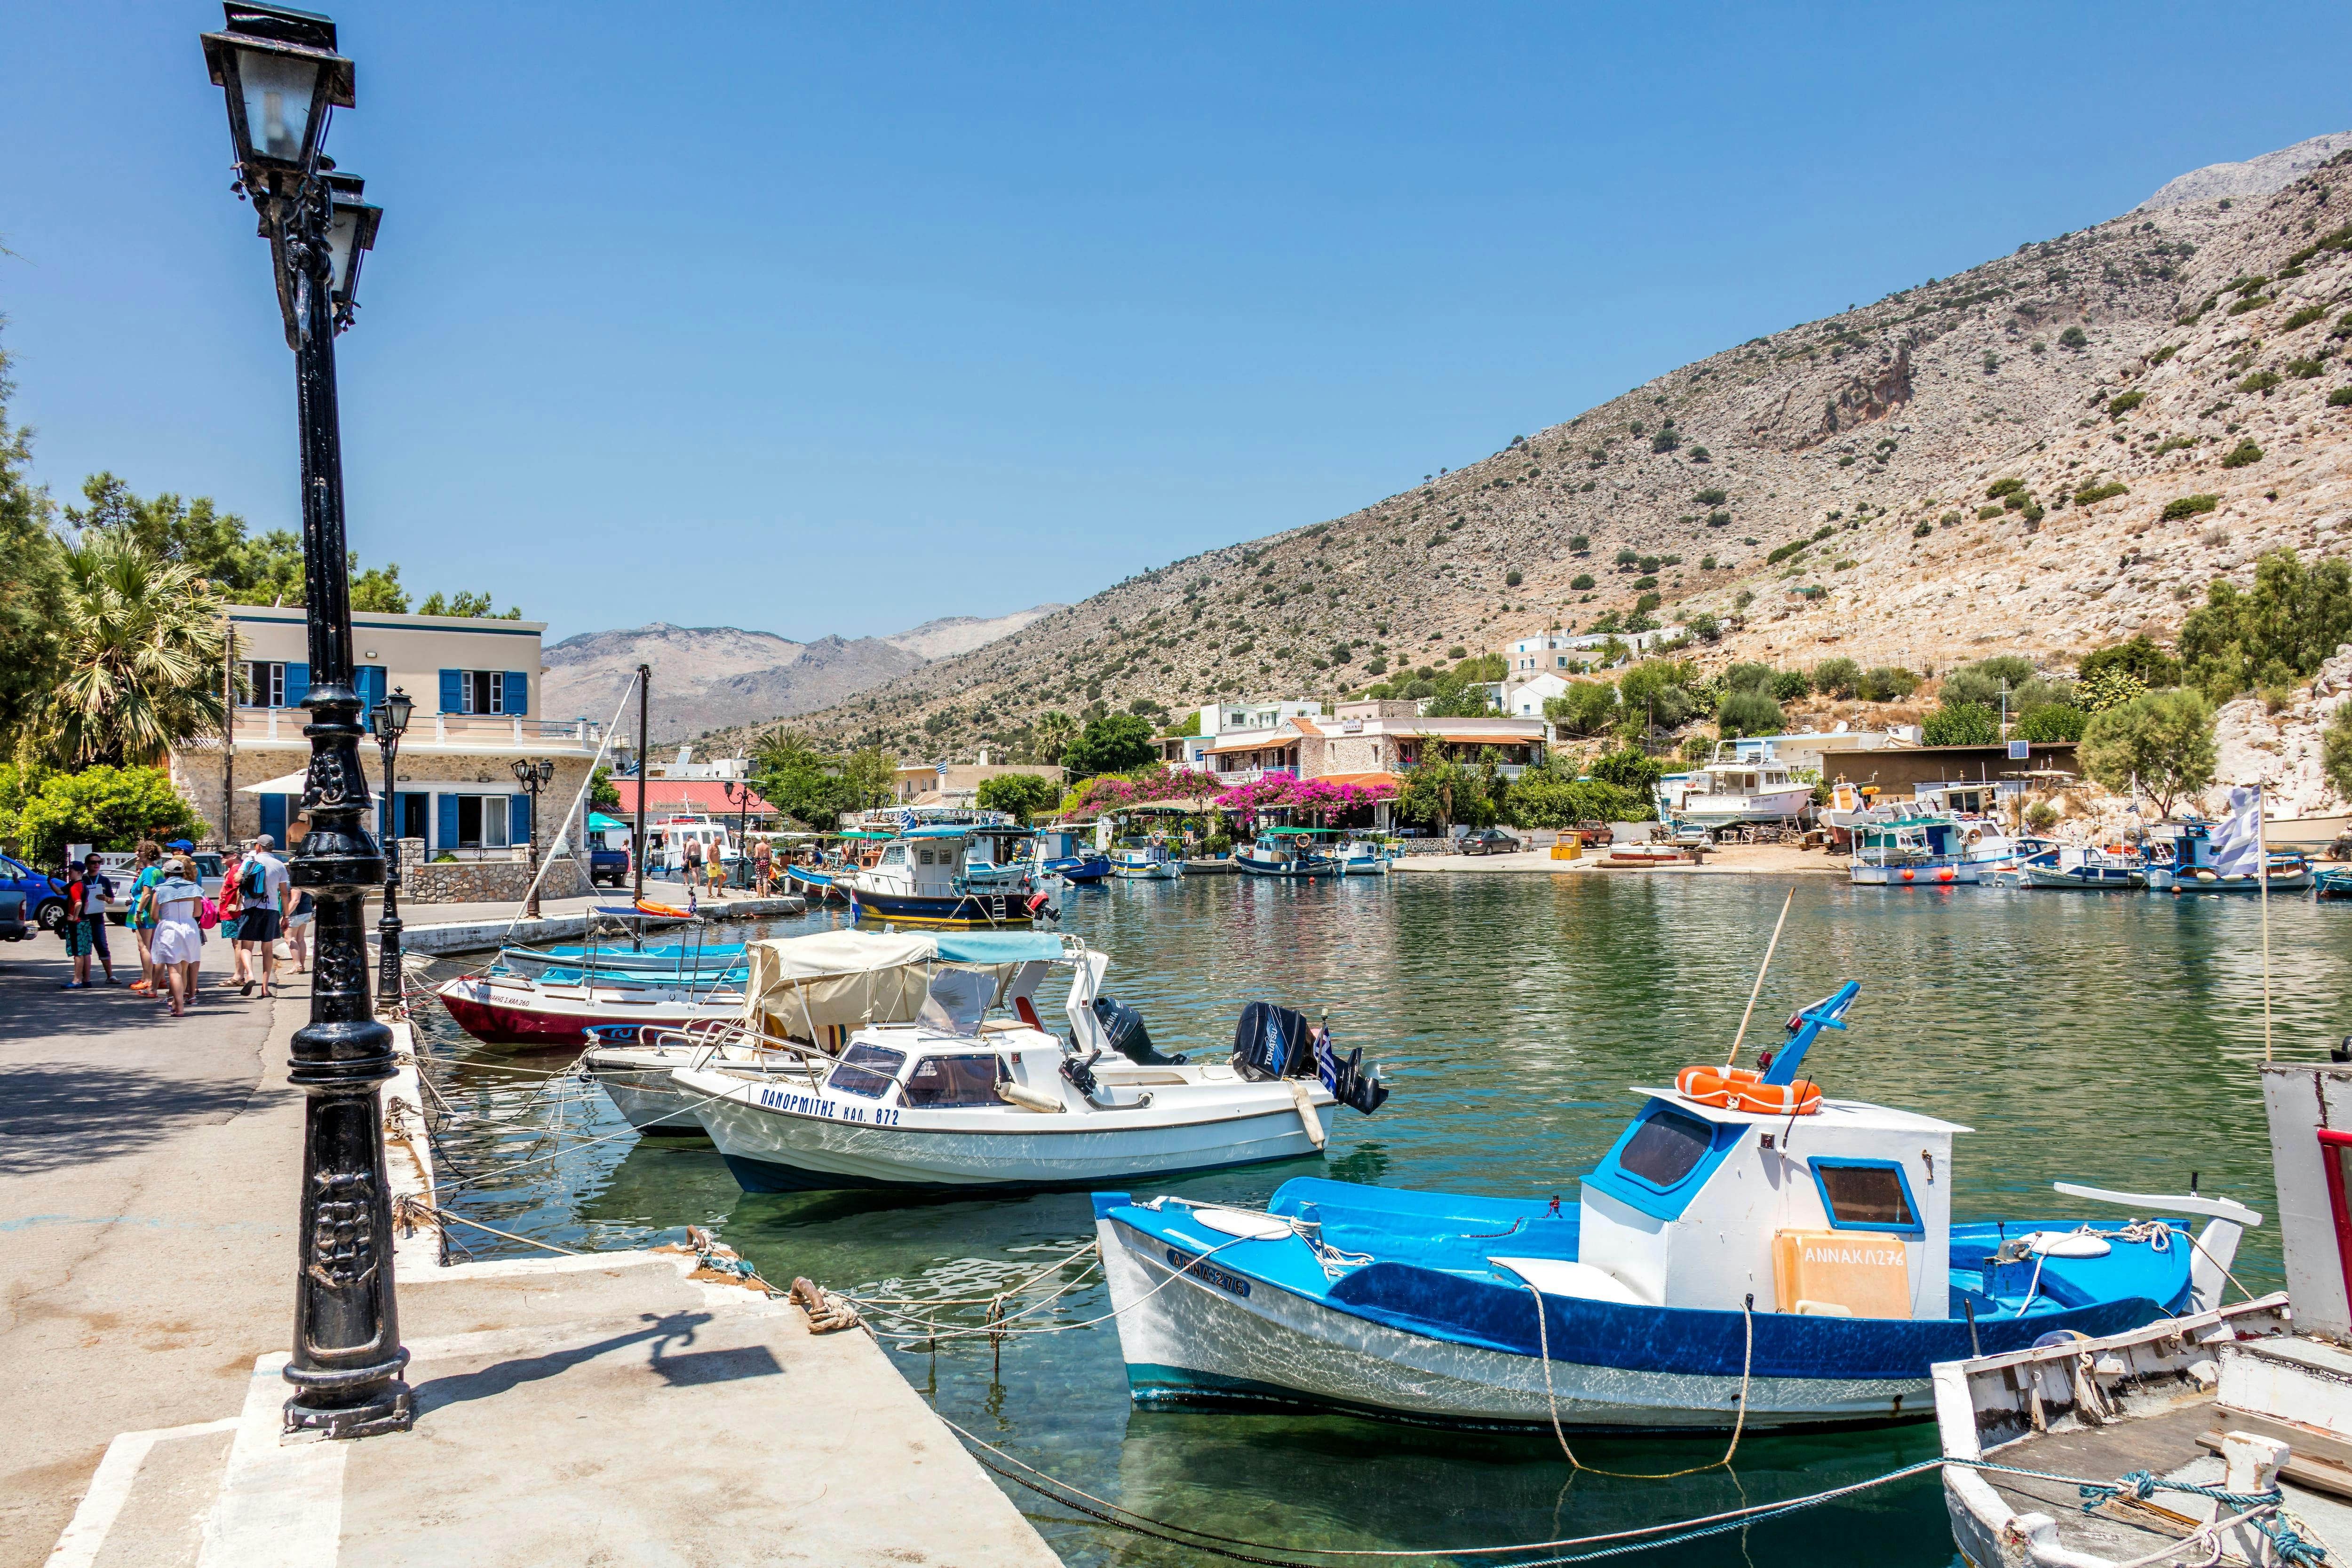 Day Trip to Greek Island of Kos